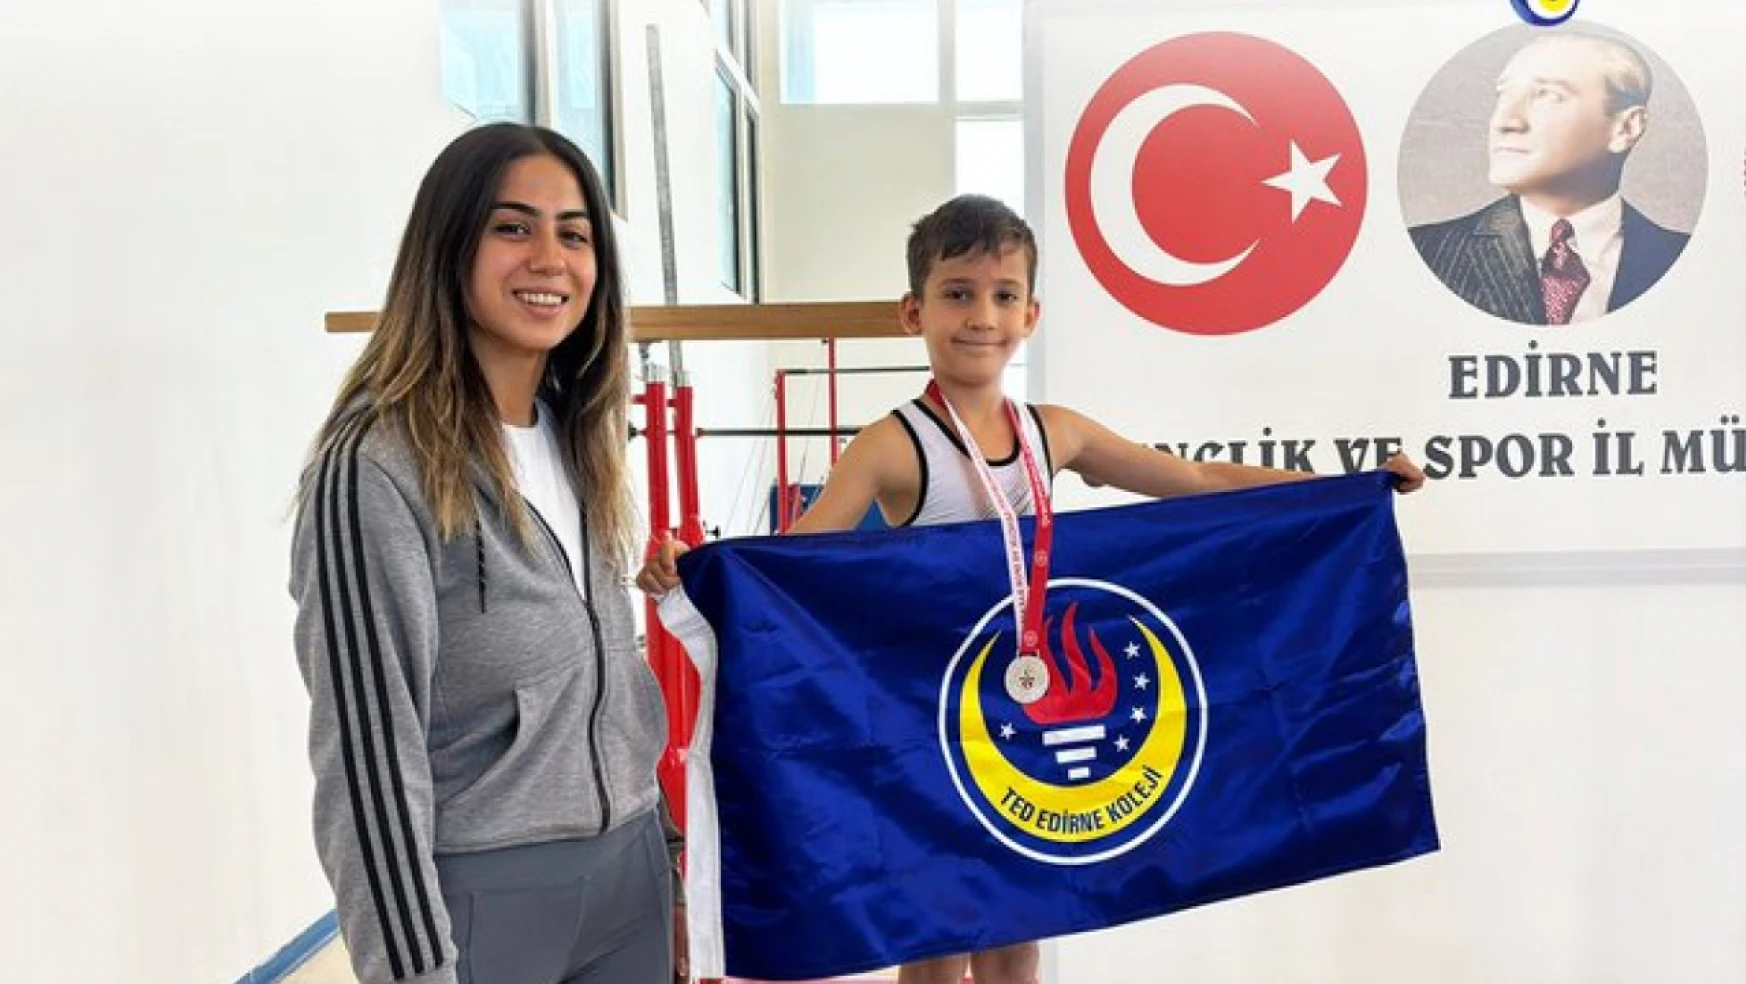 TED Edirne Koleji öğrencisi Solak, jimnastik turnuvasında 'Edirne ikincisi' oldu